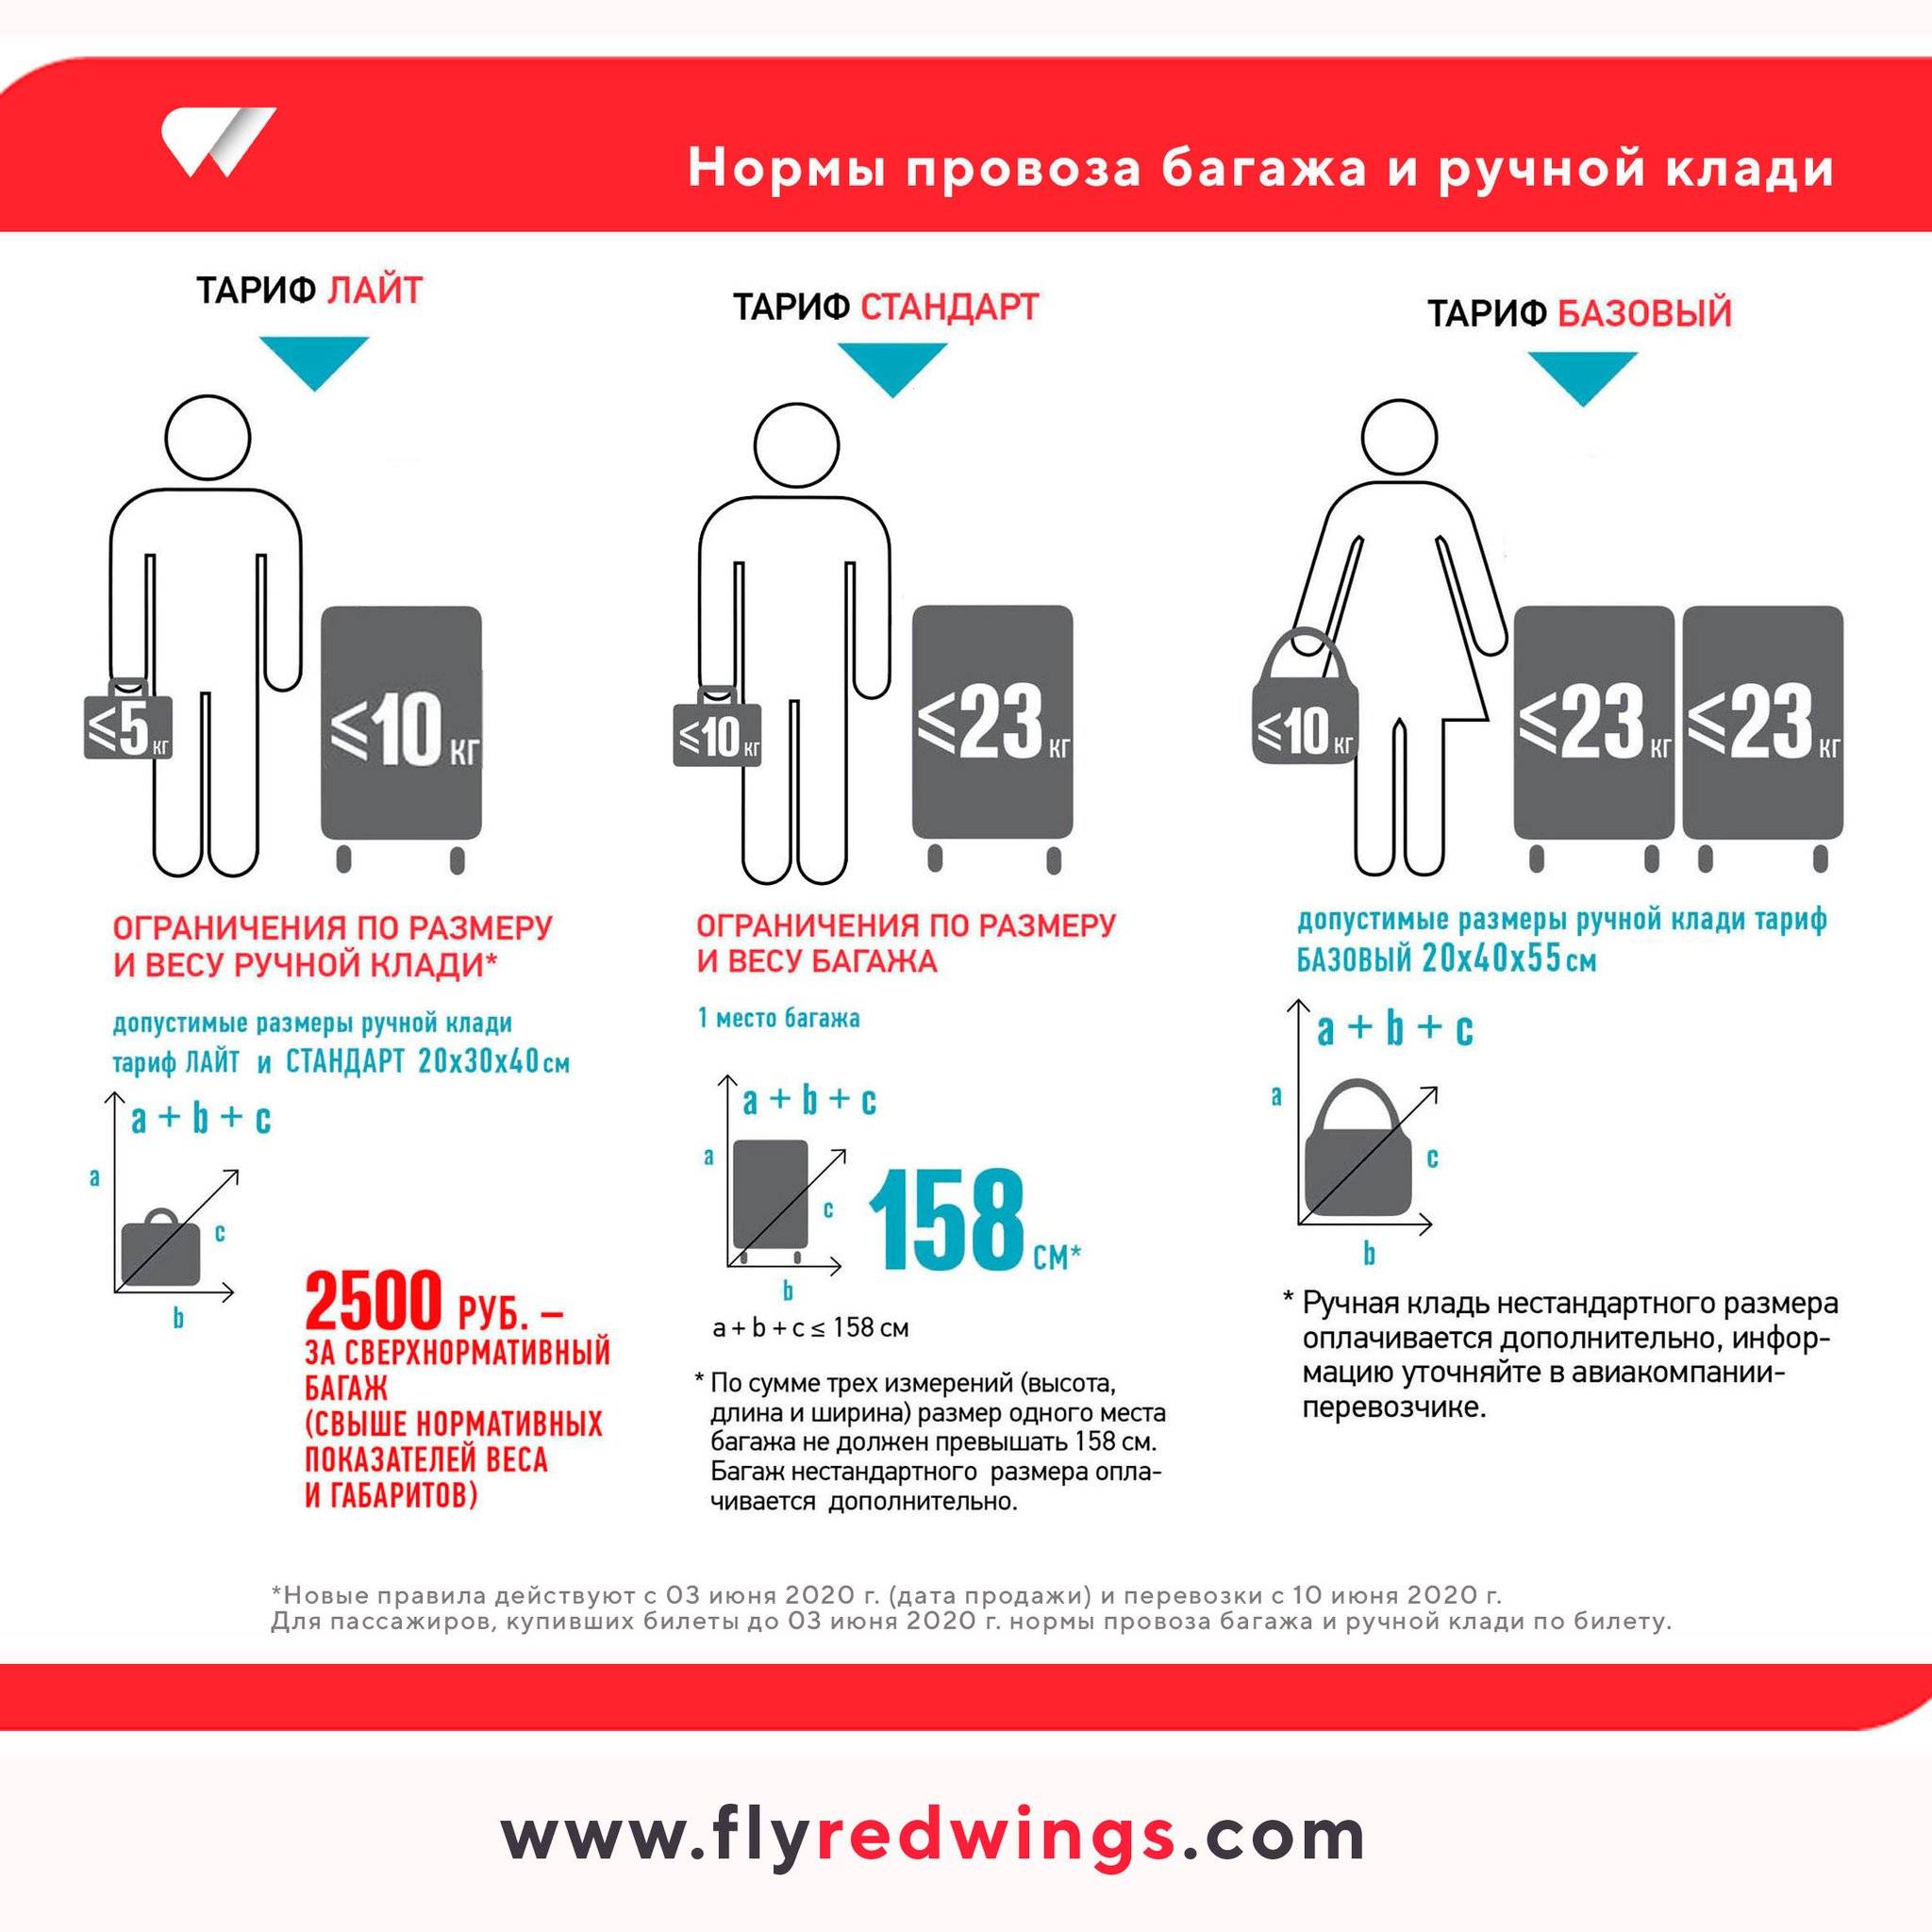 S7 багаж и ручная кладь: пять правил, которые надо знать, путешествуя с сибирскими авиалиниями